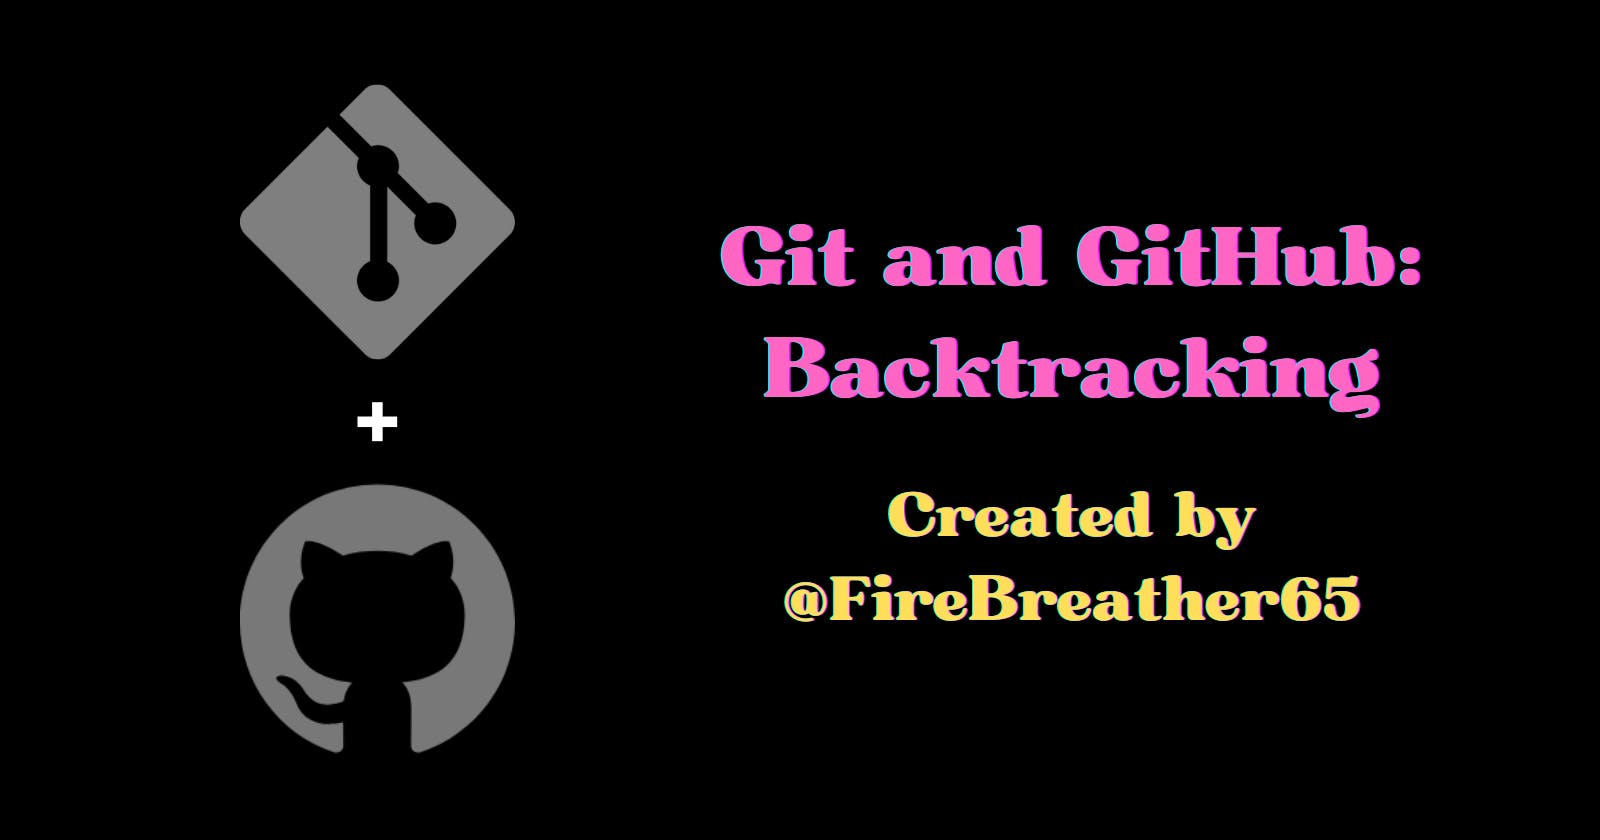 Git and GitHub: Backtracking